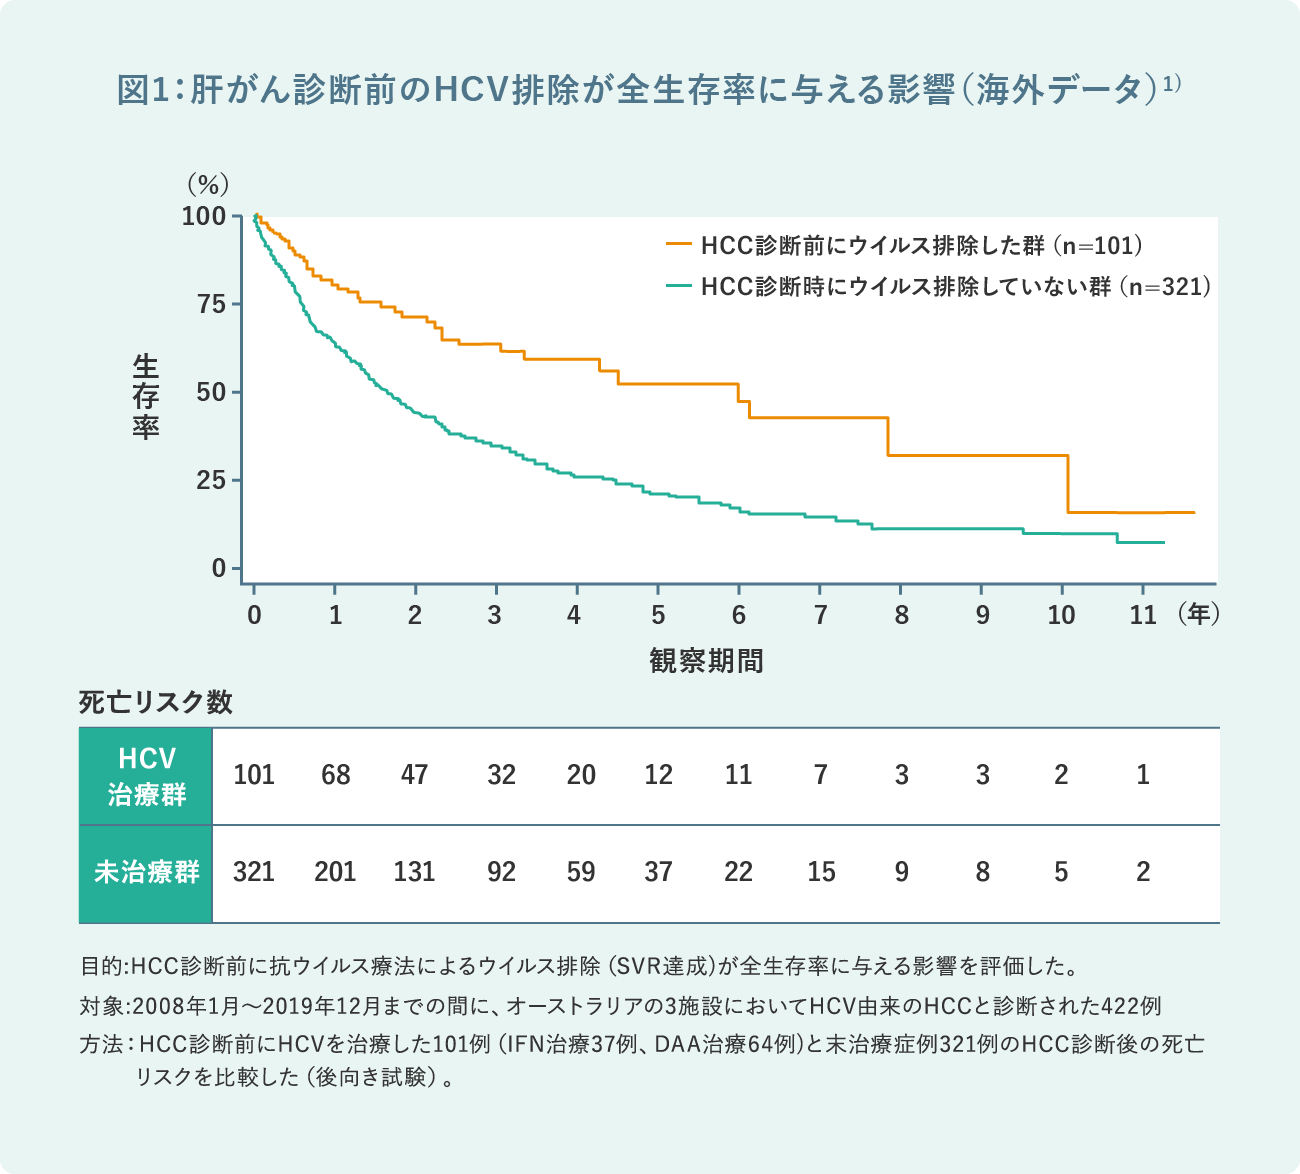 図1：肝がん診断前のHCV排除が全生存率に与える影響（海外データ）1)